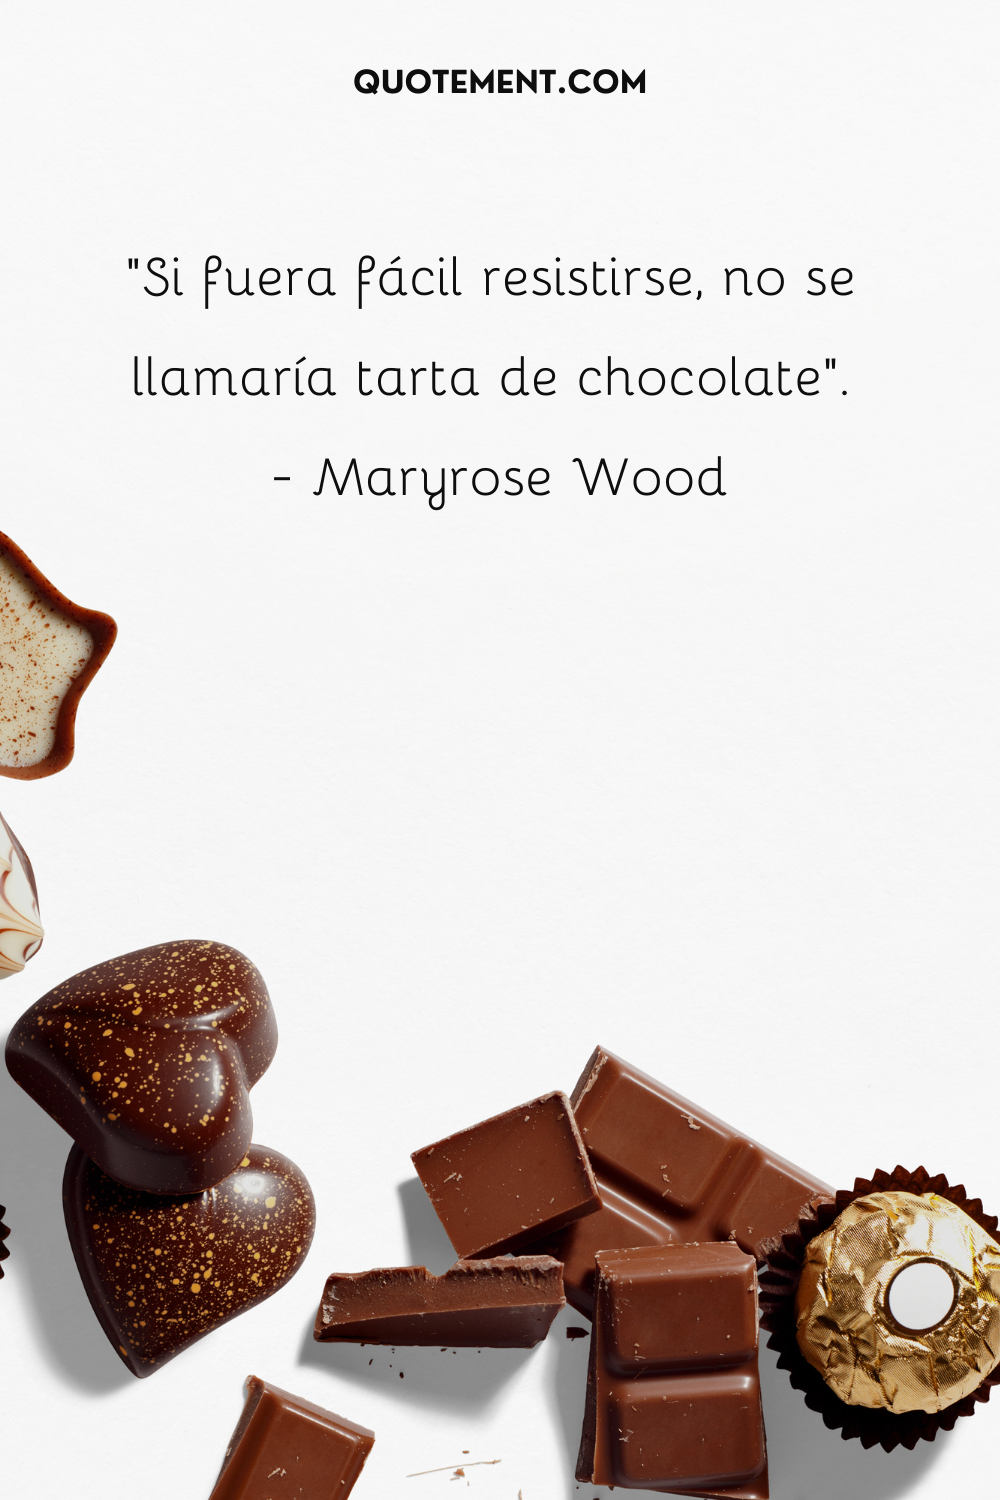 "Si fuera fácil resistirse, no se llamaría tarta de chocolate". - Maryrose Wood